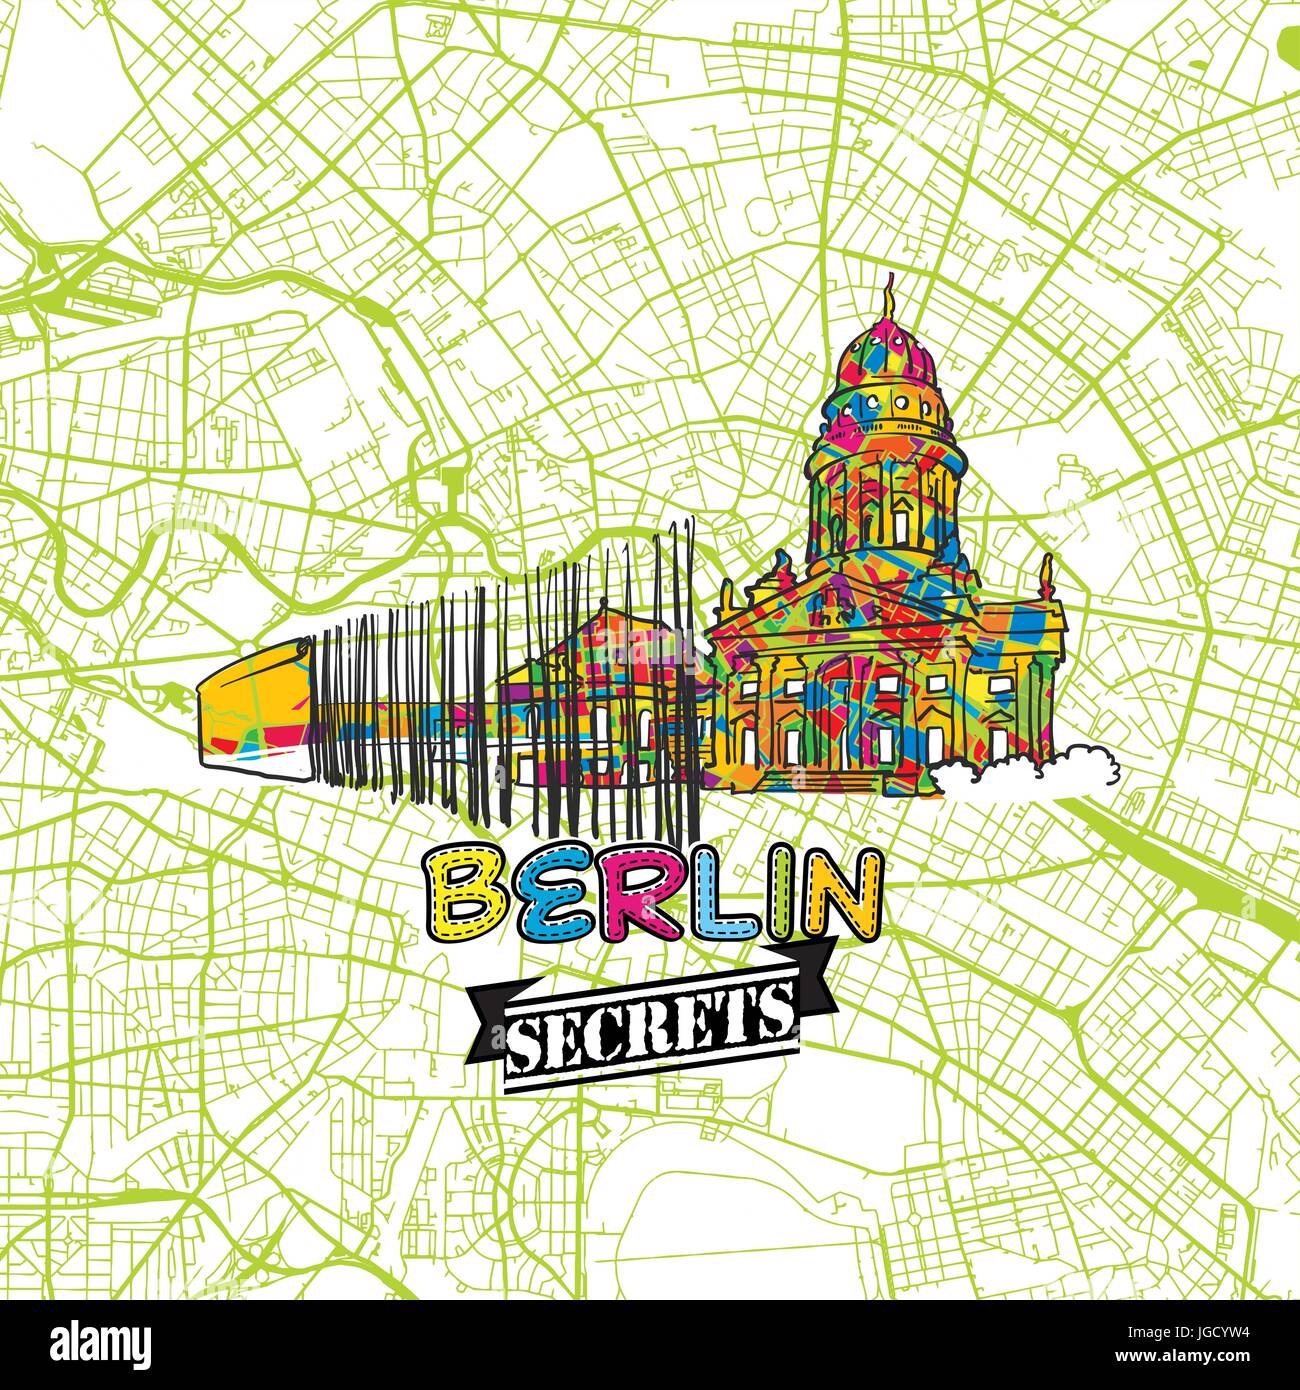 Voyage Berlin Art Secrets Site pour la cartographie des experts et des guides de voyage. Le logo de la ville à la main, typo de badge et dessinés à la main sur le dessus de l'image vectorielle sont regroupés et Illustration de Vecteur